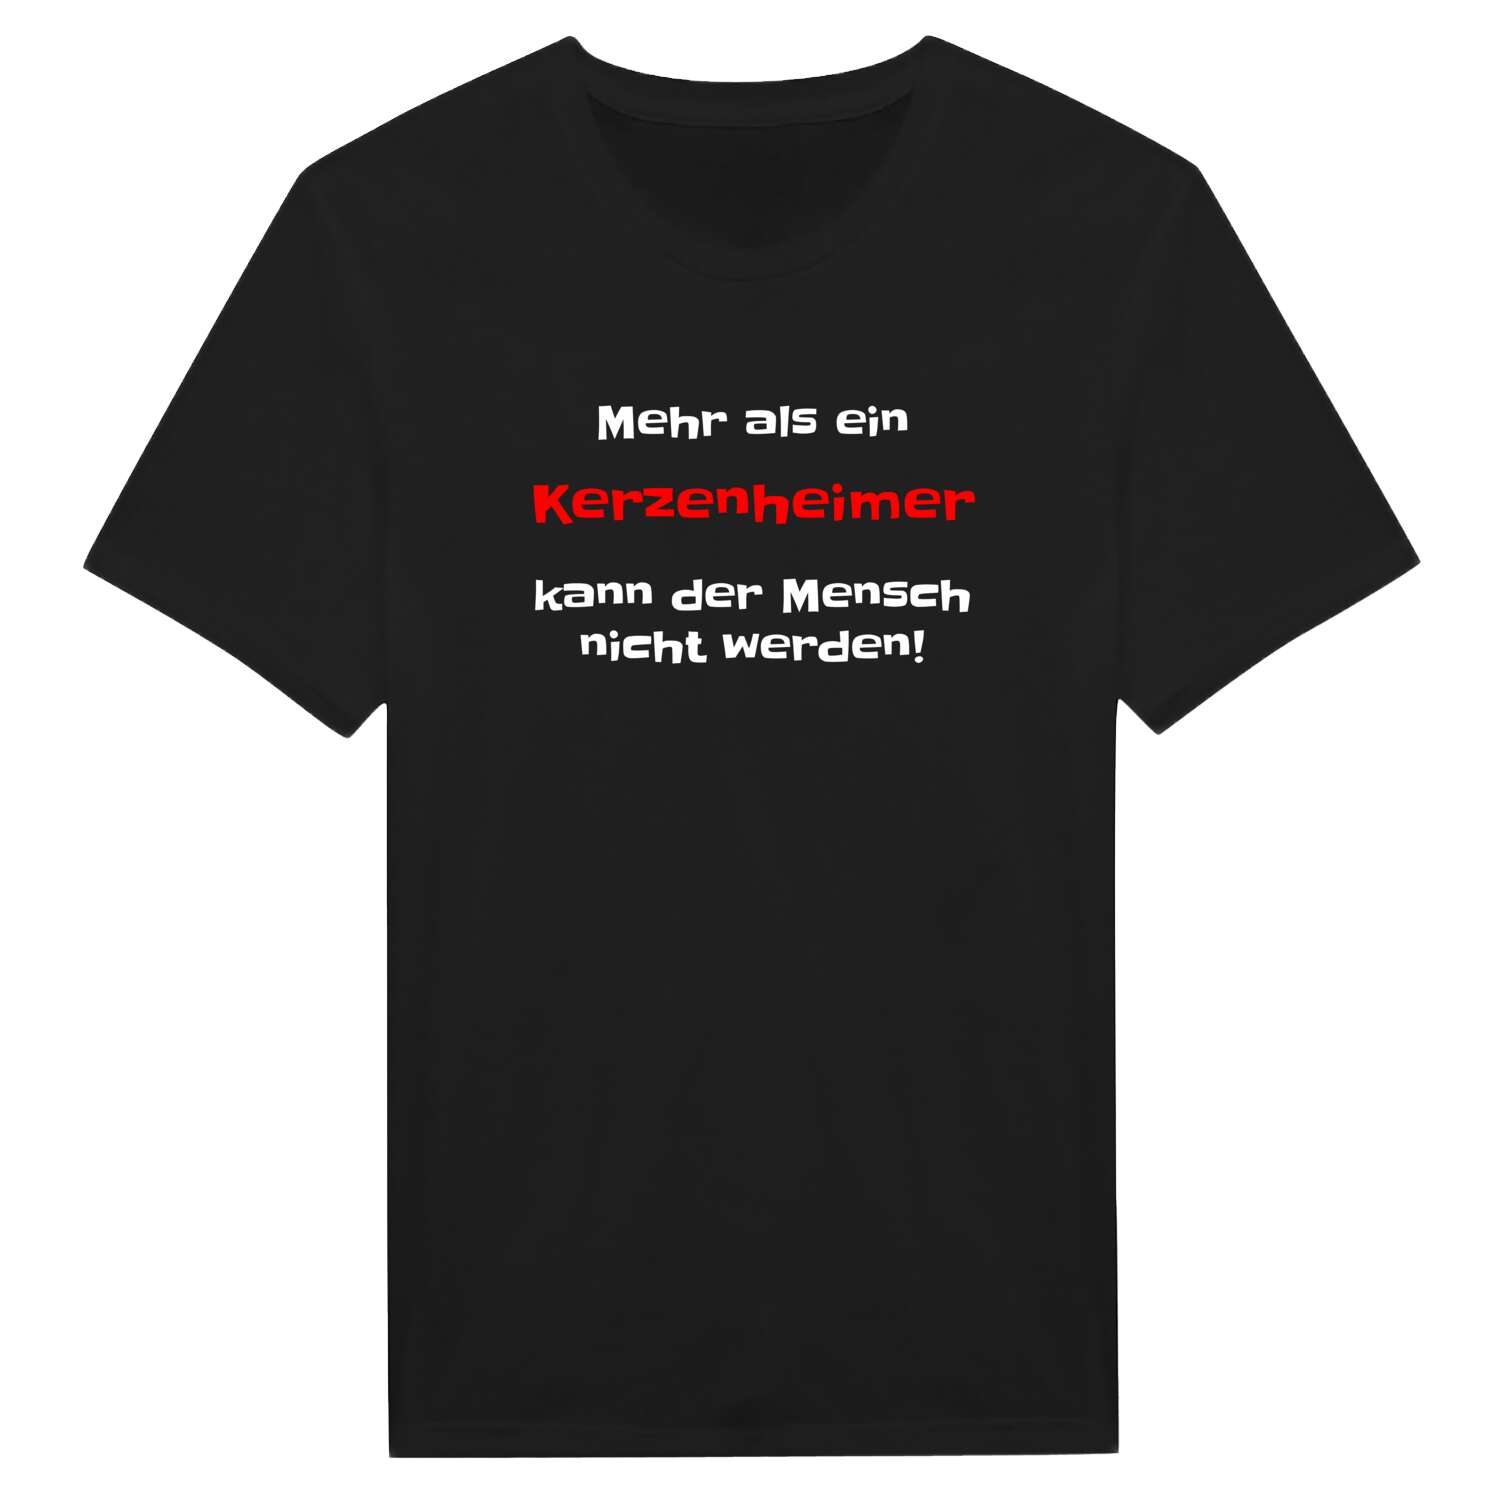 Kerzenheim T-Shirt »Mehr als ein«